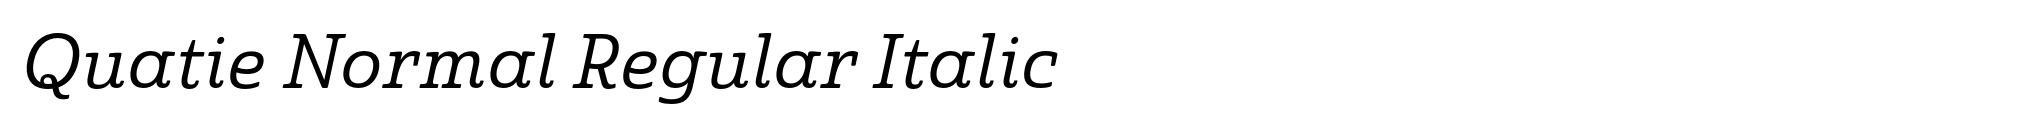 Quatie Normal Regular Italic image